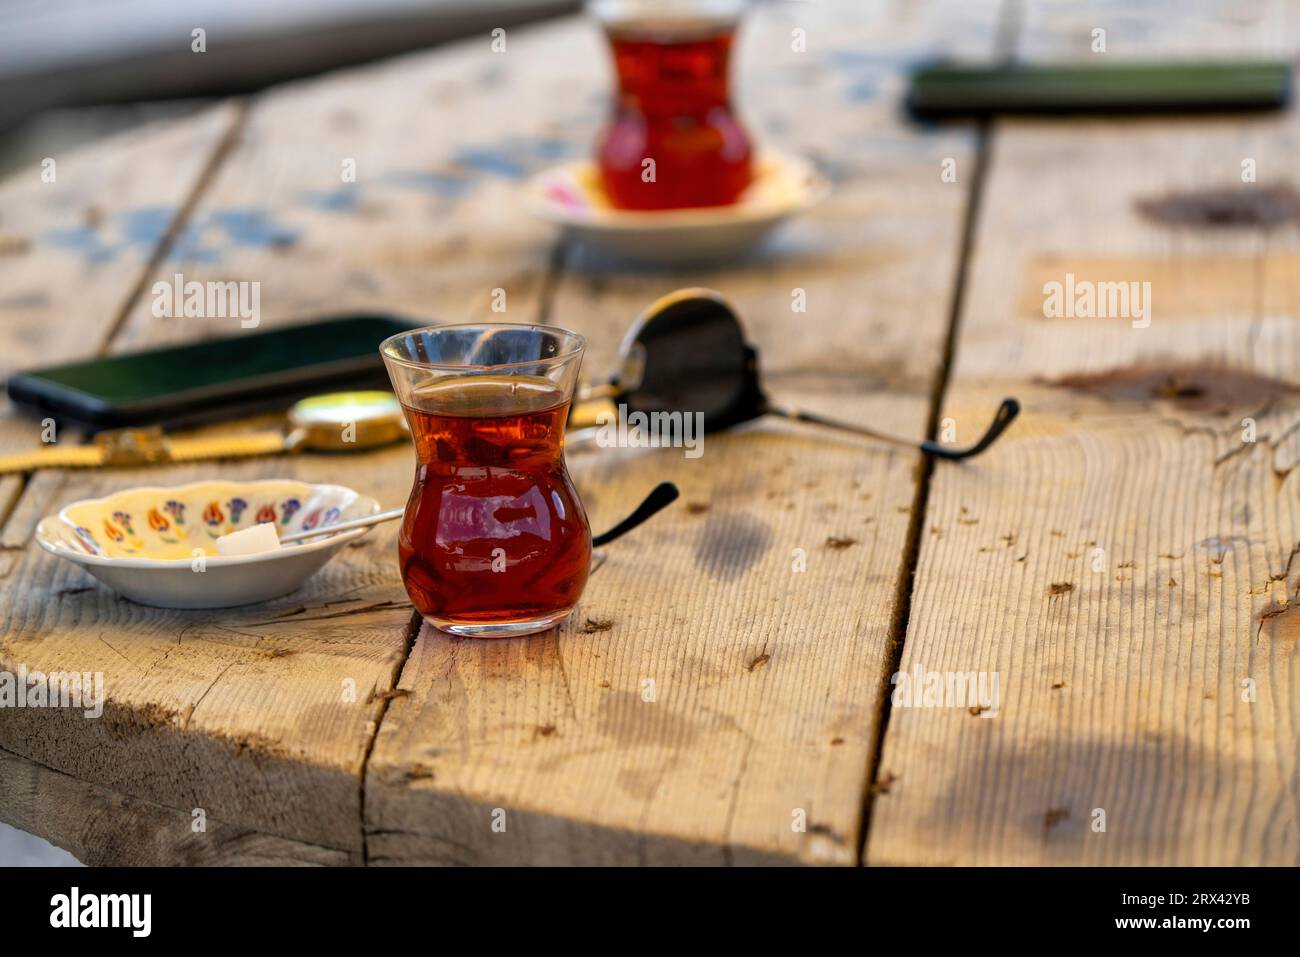 Turkish tea on the table. Stock Photo